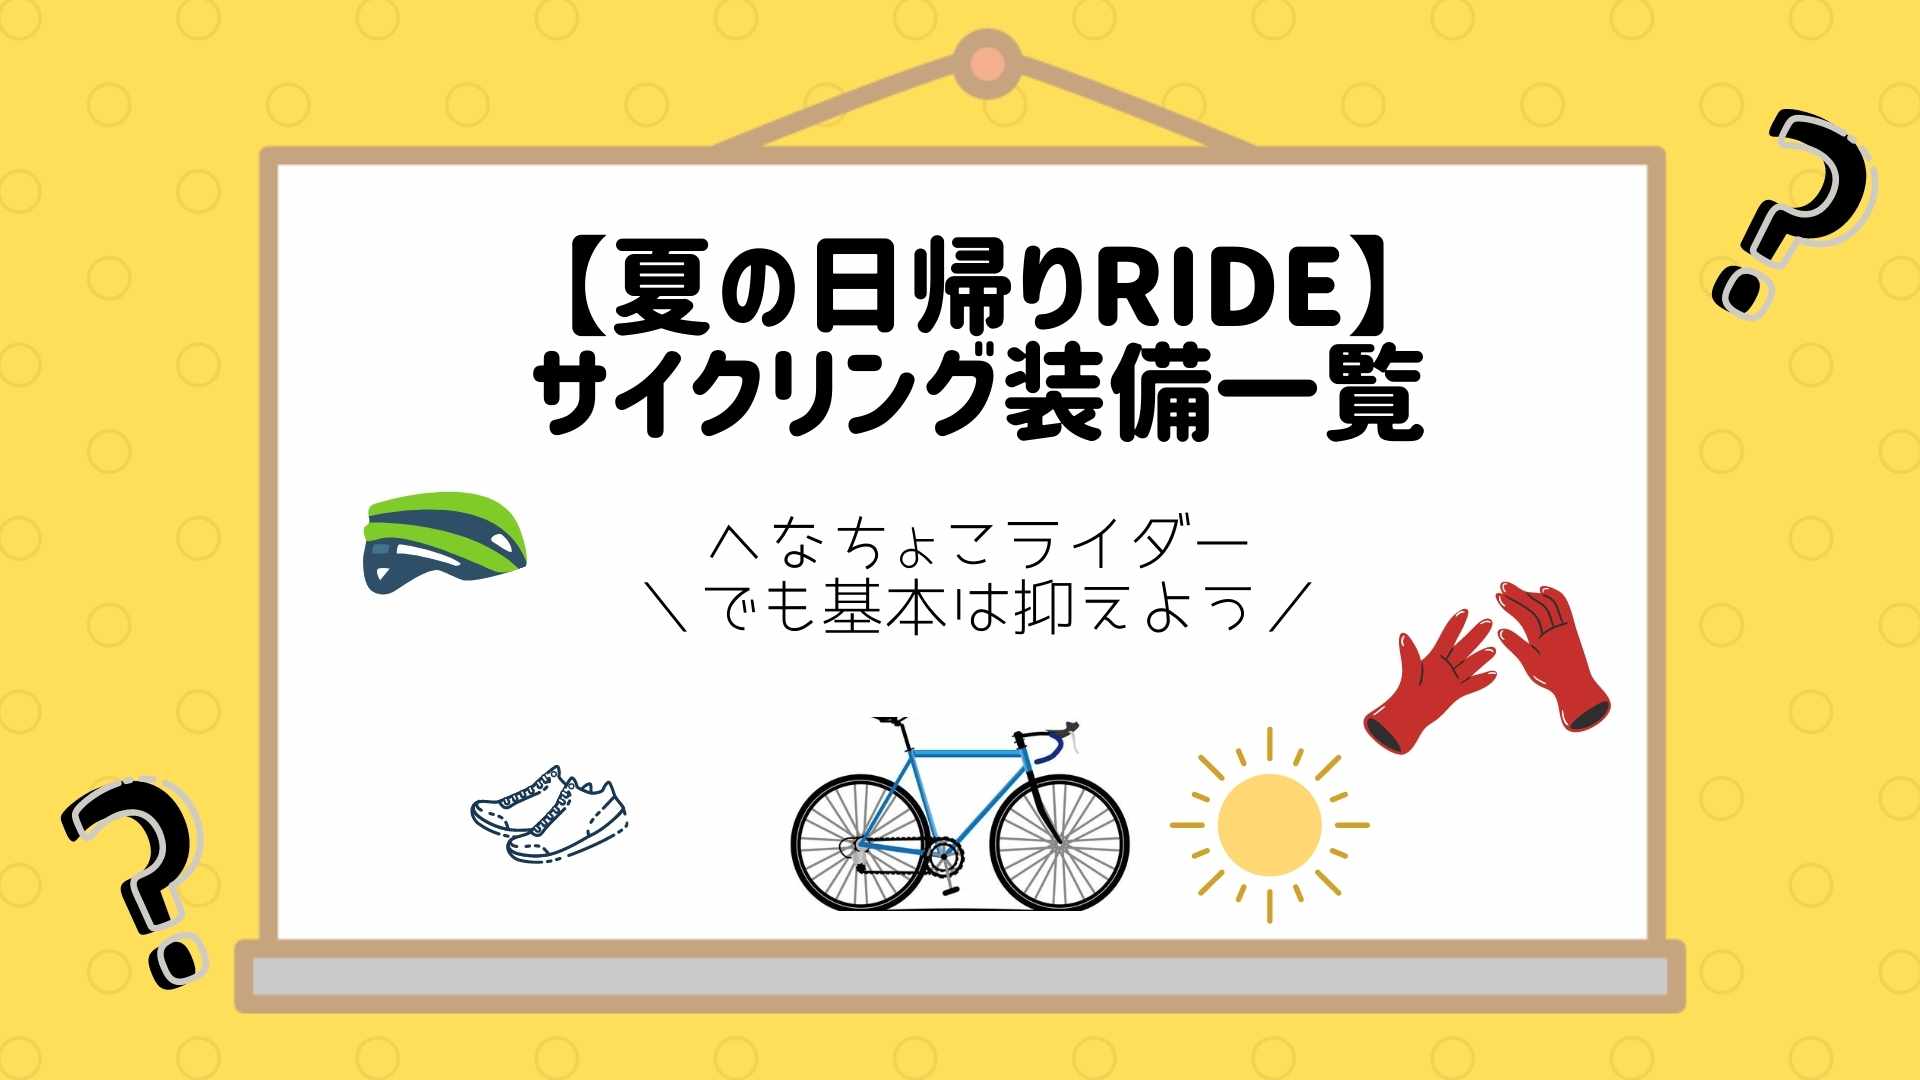 【夏の日帰りライド】サイクリング装備一覧